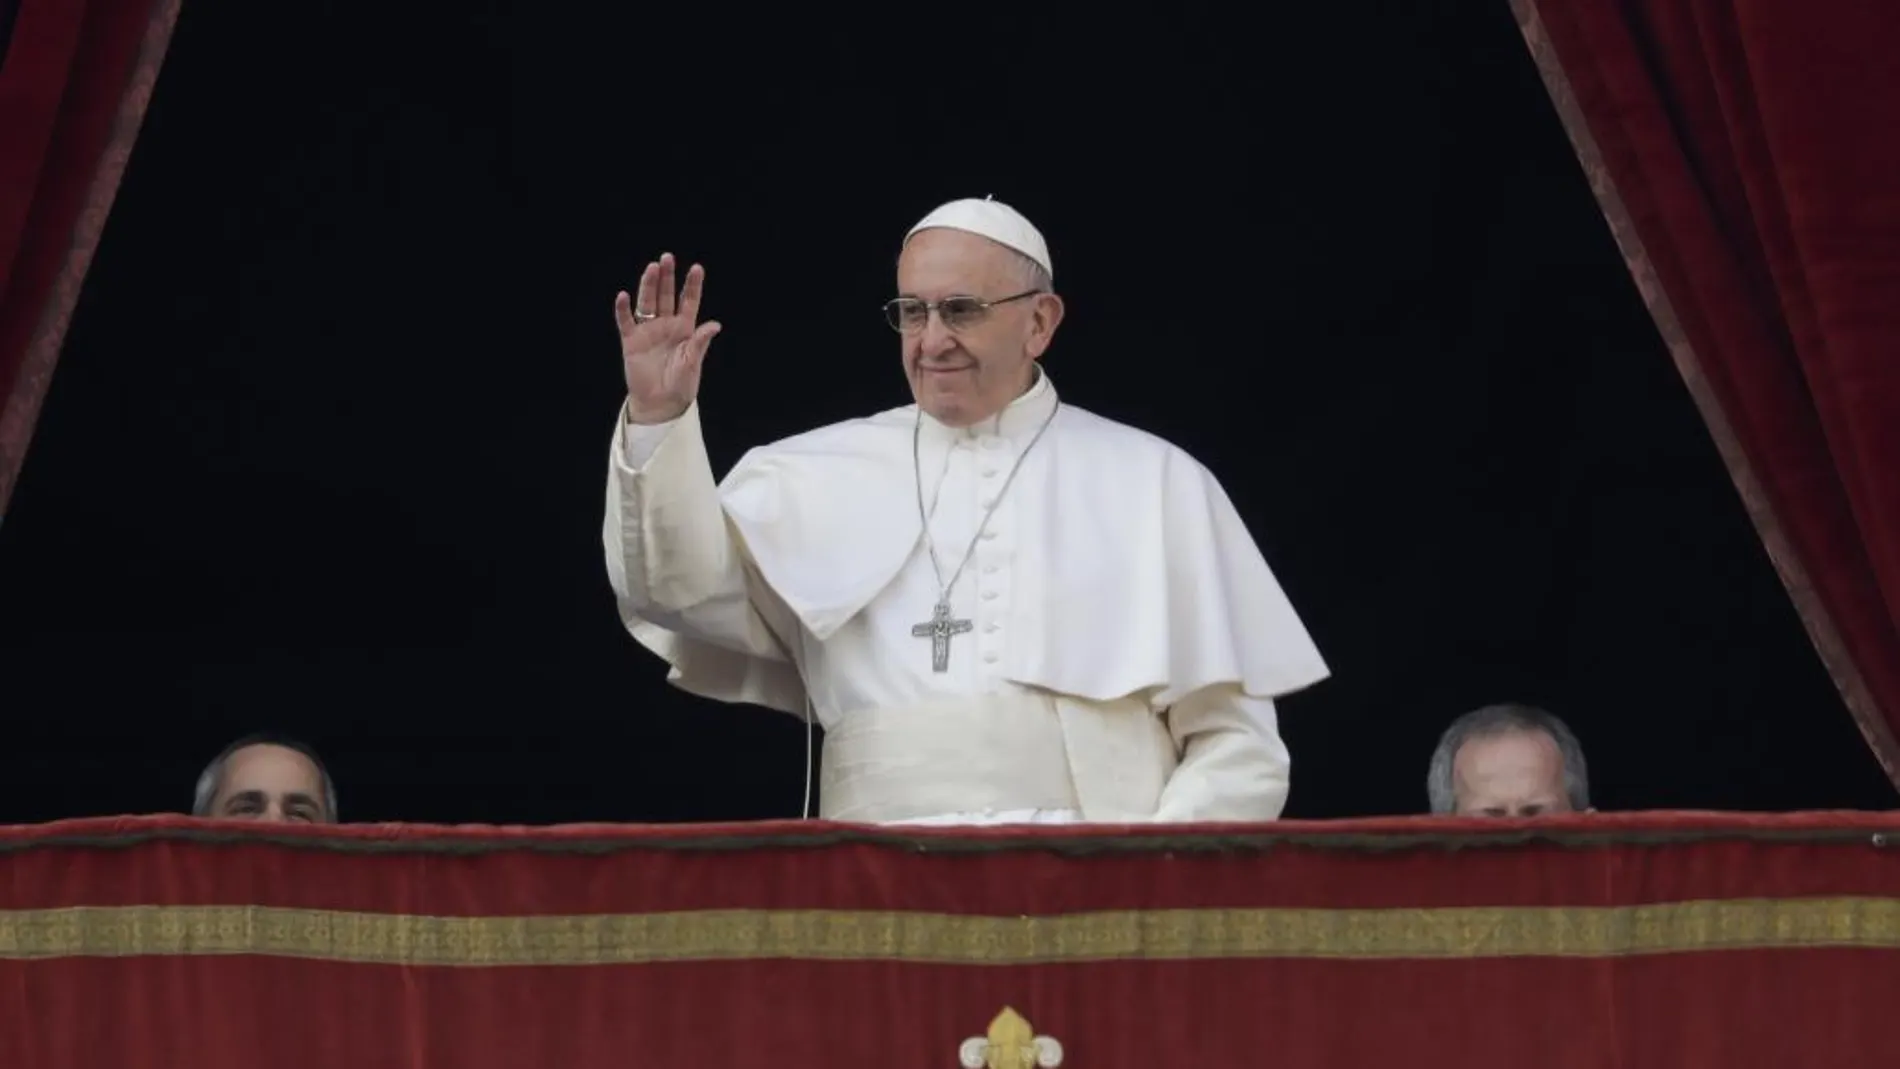 El Papa Francisco durante el mensaje de Navidad que pronunció en el balcón de la Logia central de la basílica de San Pedro.